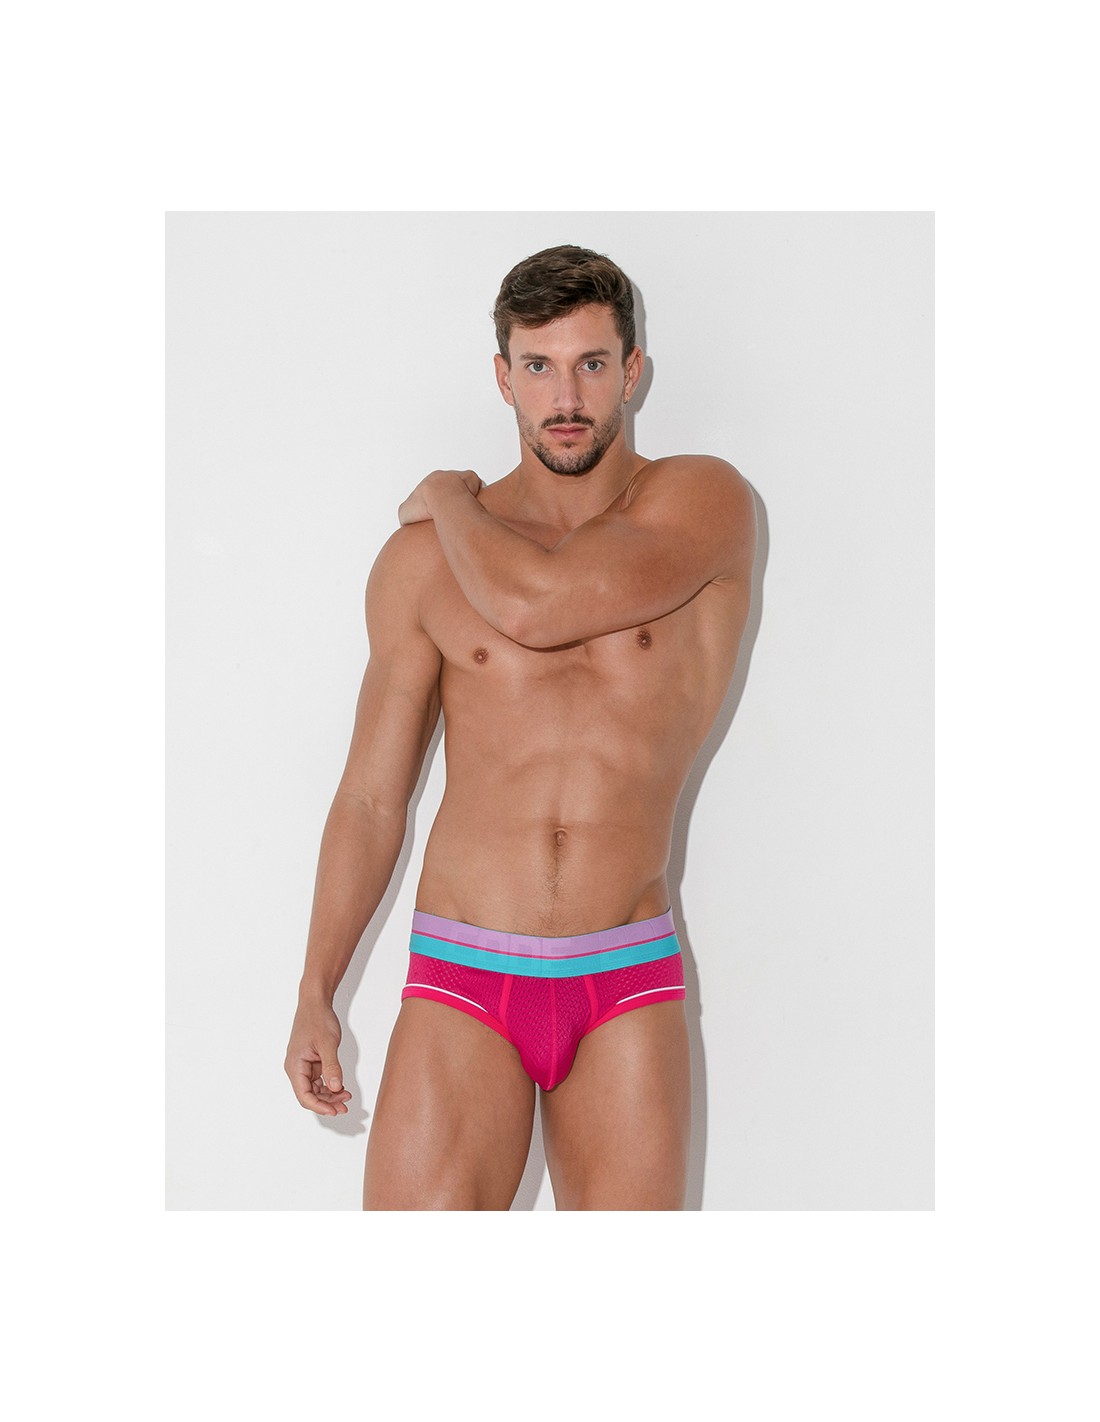 https://menandunderwear.com/shop/6267-thickbox_default/code-22-bright-mesh-briefs-pink.jpg